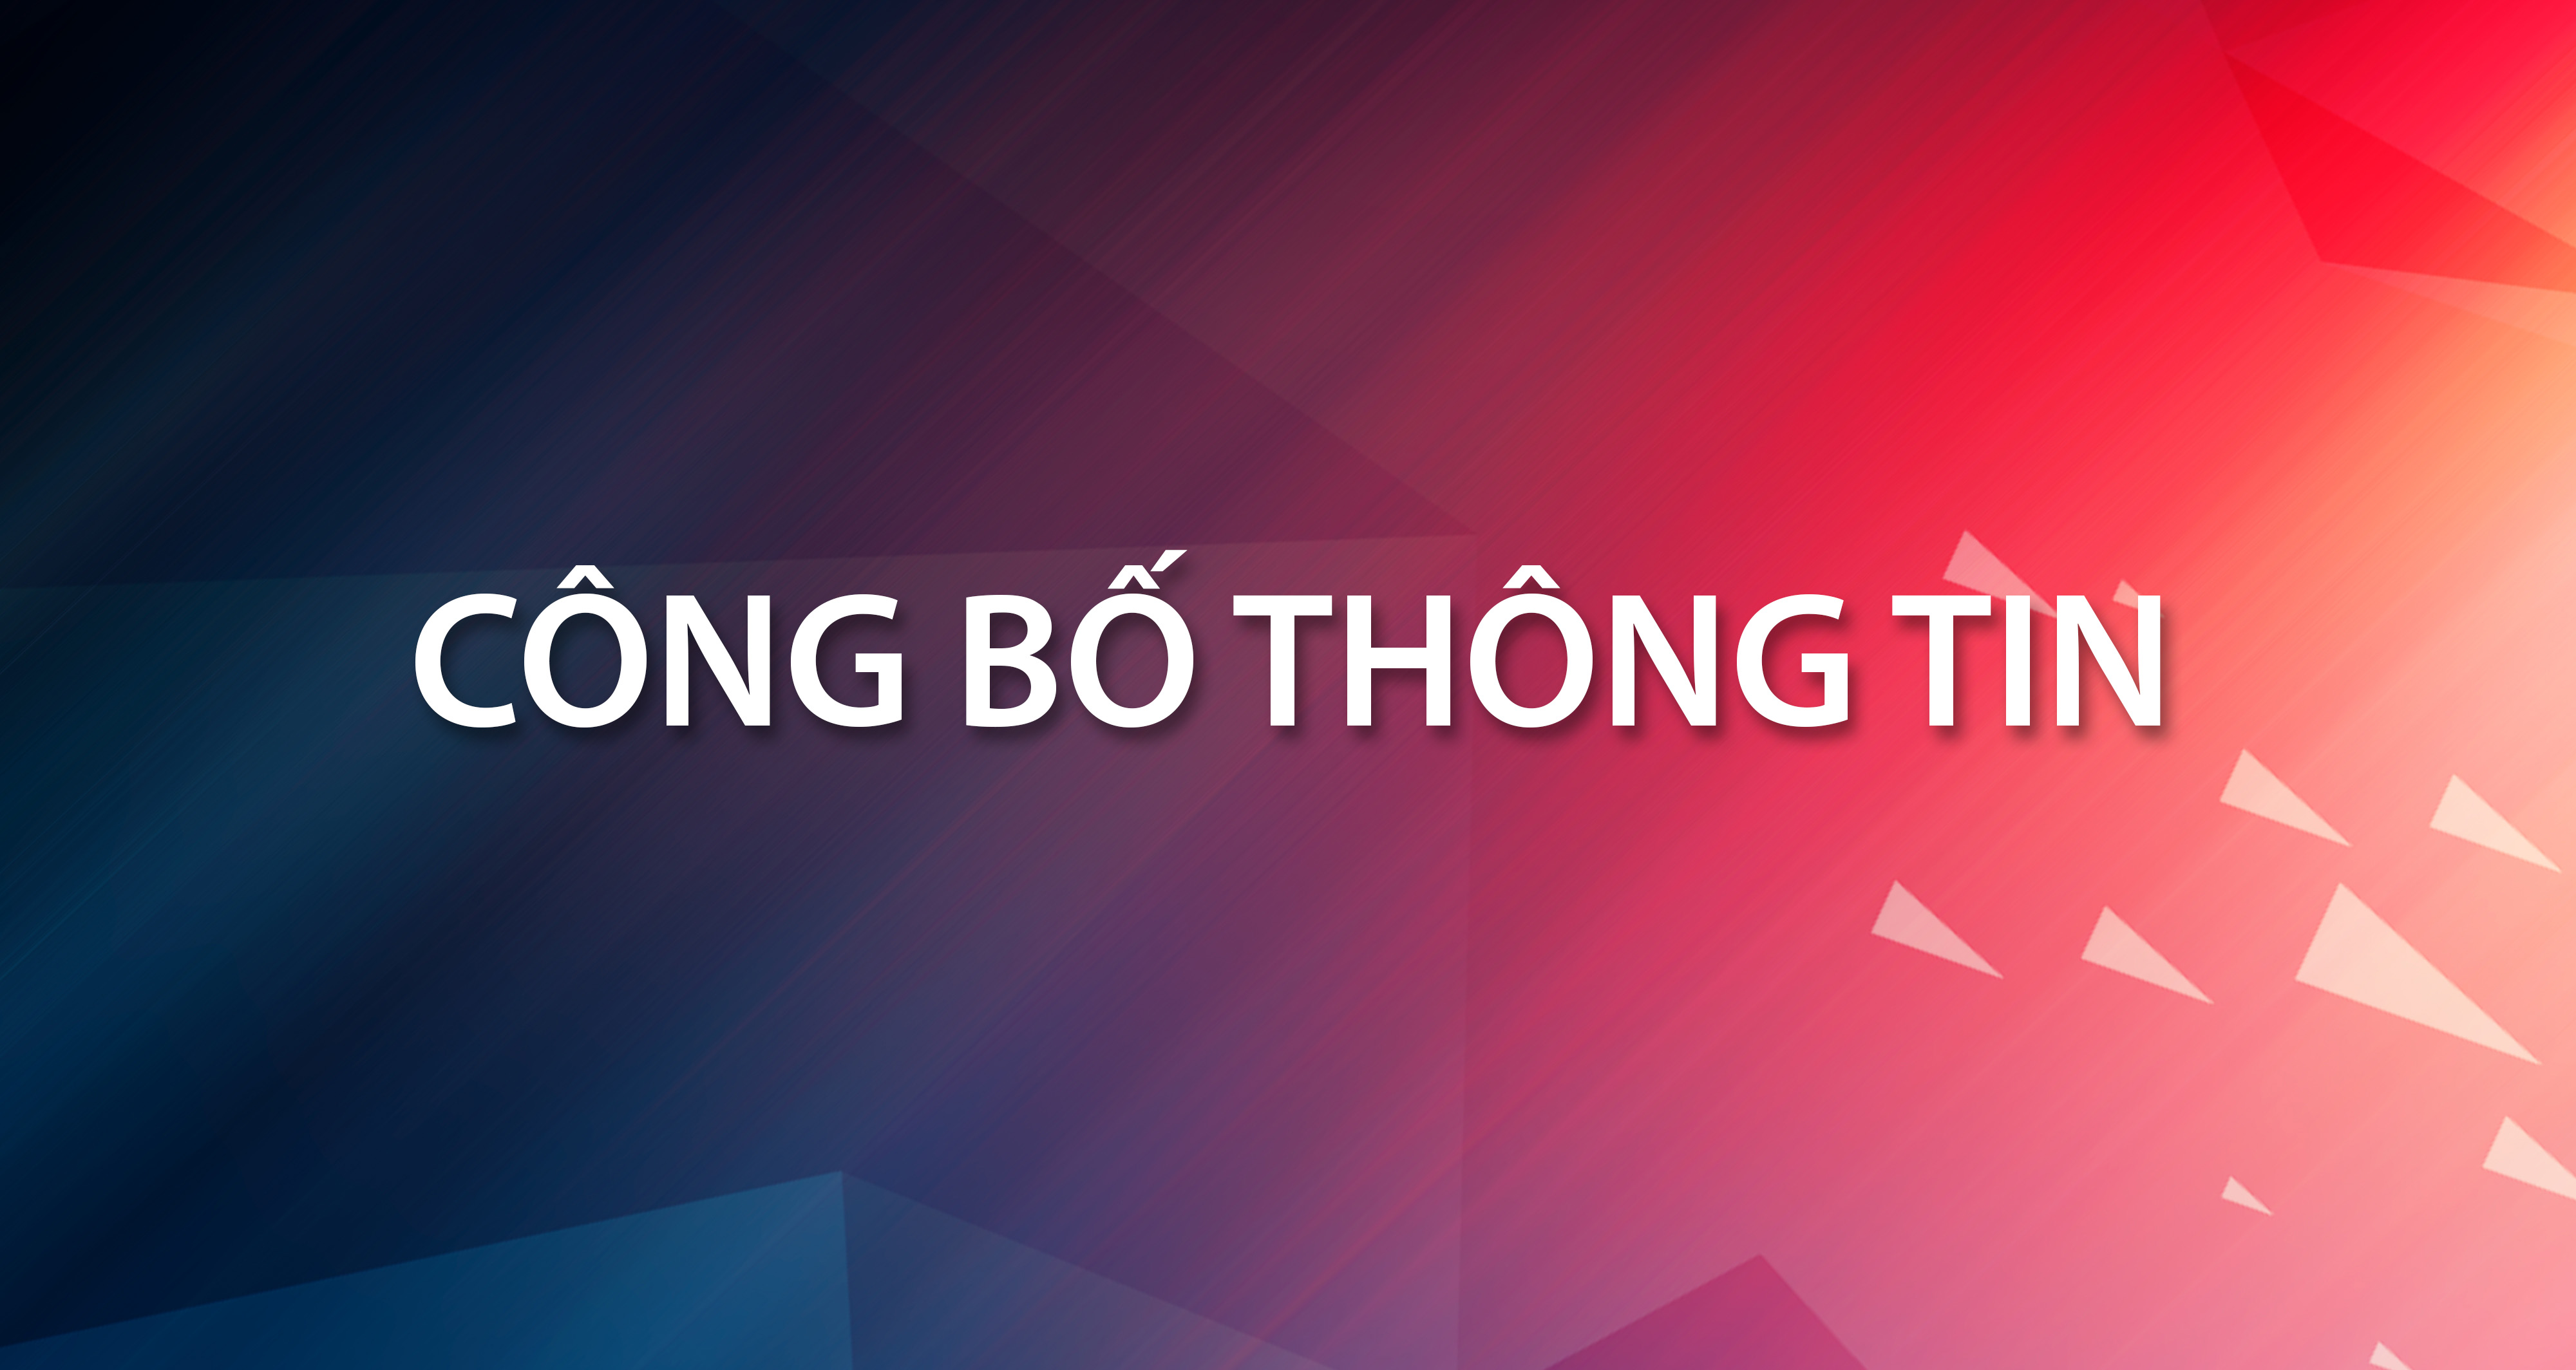 Thông báo chào bán cạnh tranh cổ phần của Nhà xuất bản Giáo dục Việt Nam tại Công ty Cổ phần Tập đoàn Tân Mai